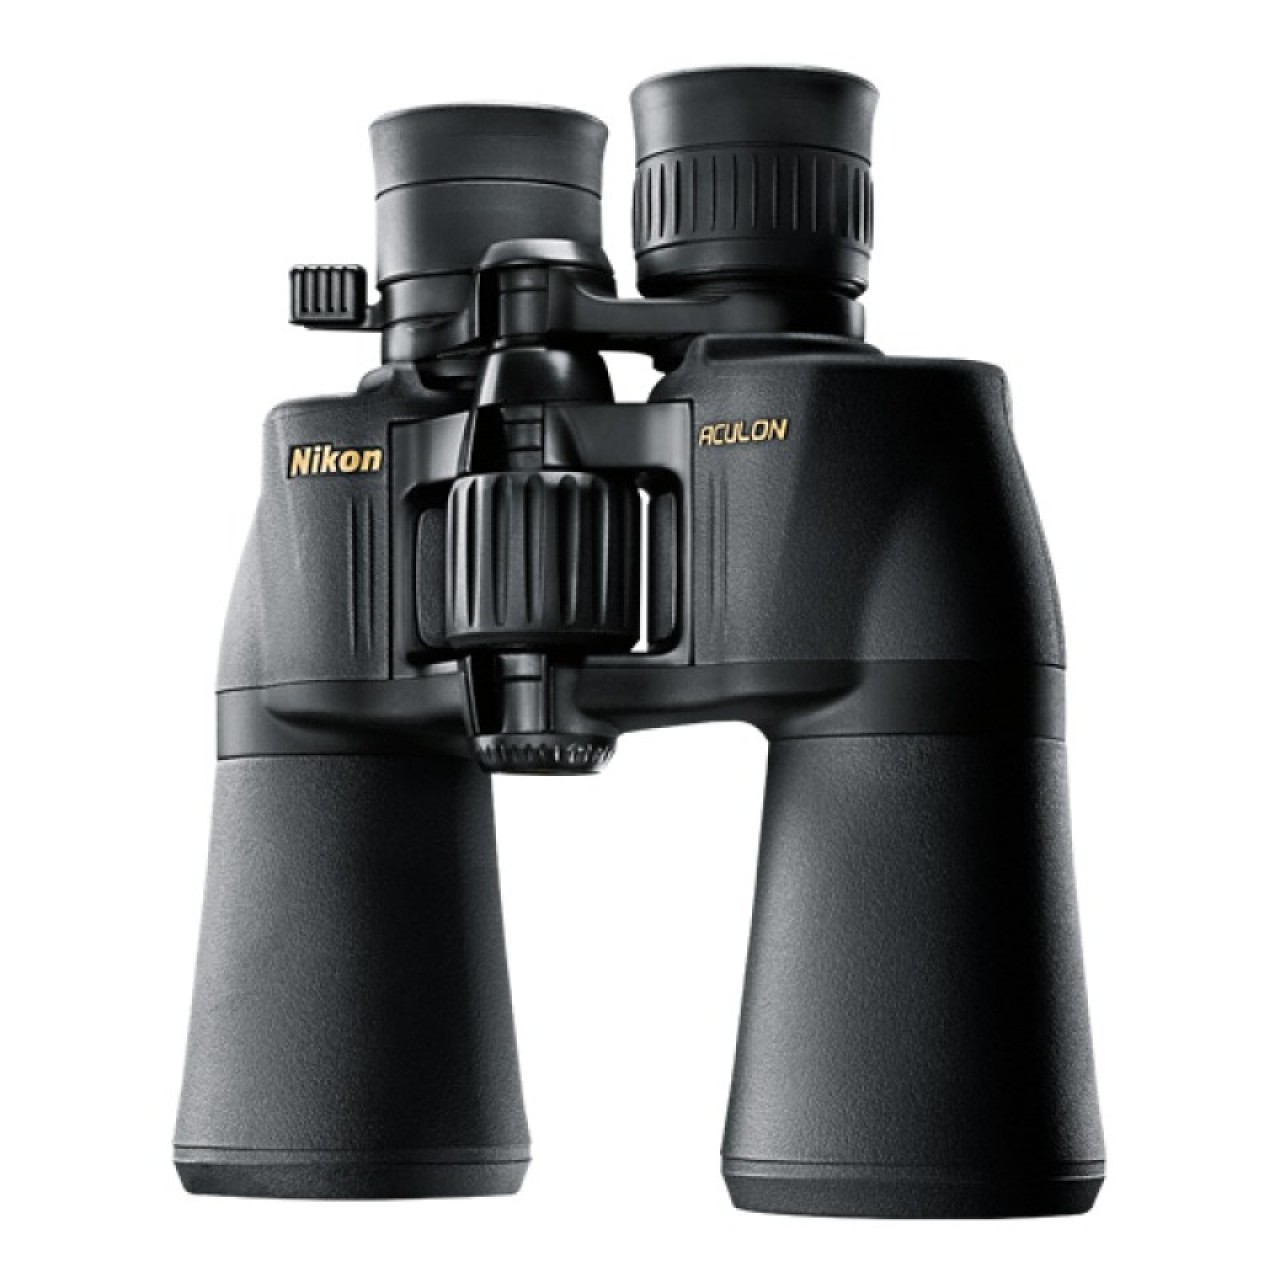 Nikon 8252 ACULON A211 10-22x50 Binoculars